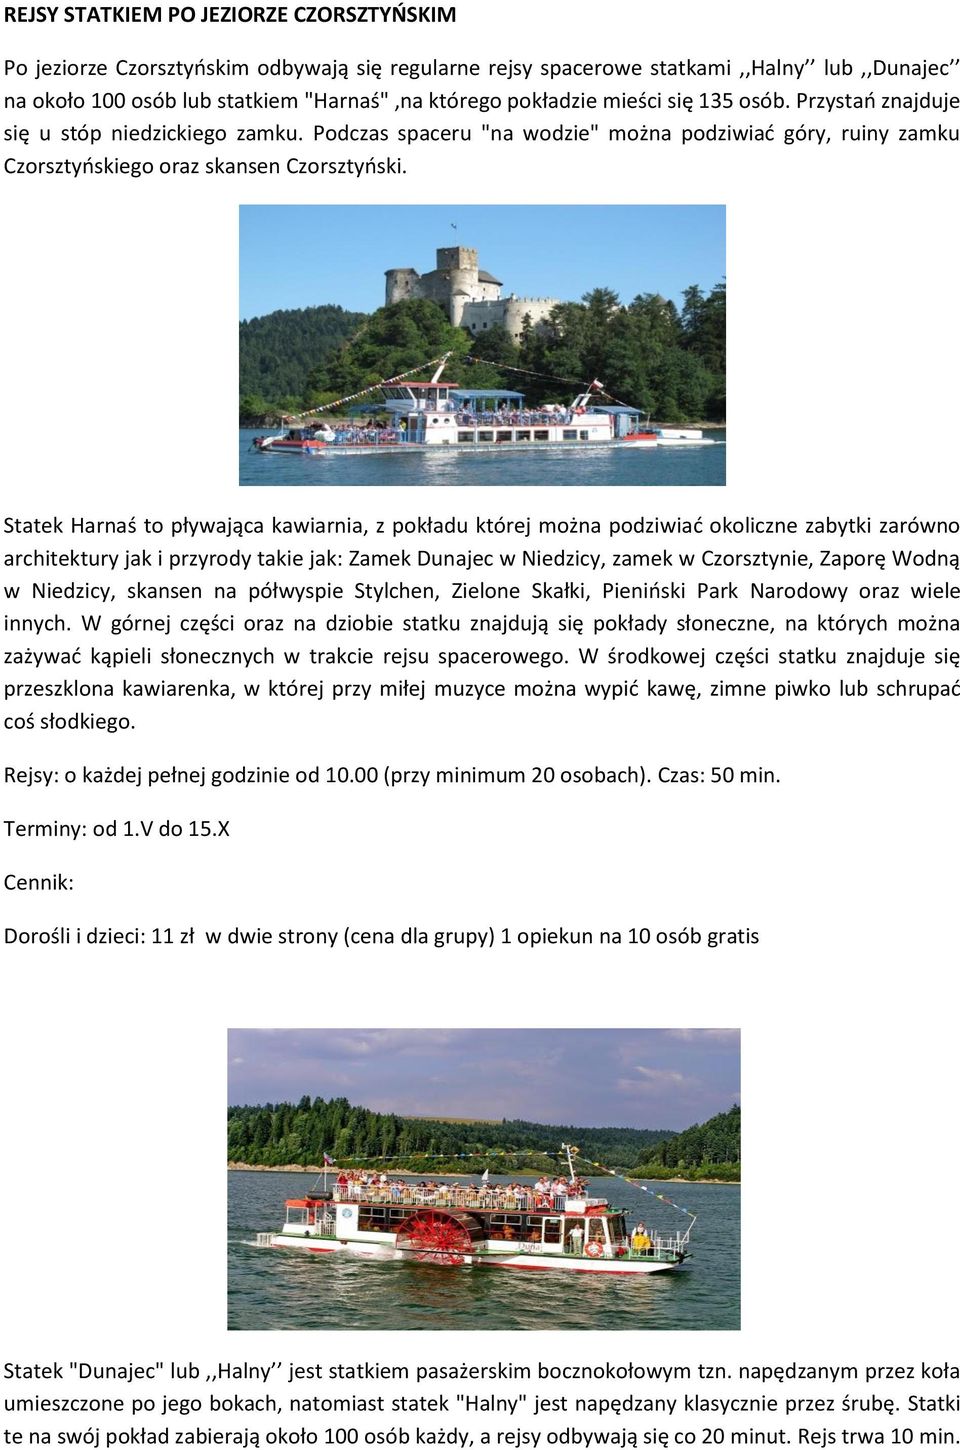 Statek Harnaś to pływająca kawiarnia, z pokładu której można podziwiać okoliczne zabytki zarówno architektury jak i przyrody takie jak: Zamek Dunajec w Niedzicy, zamek w Czorsztynie, Zaporę Wodną w